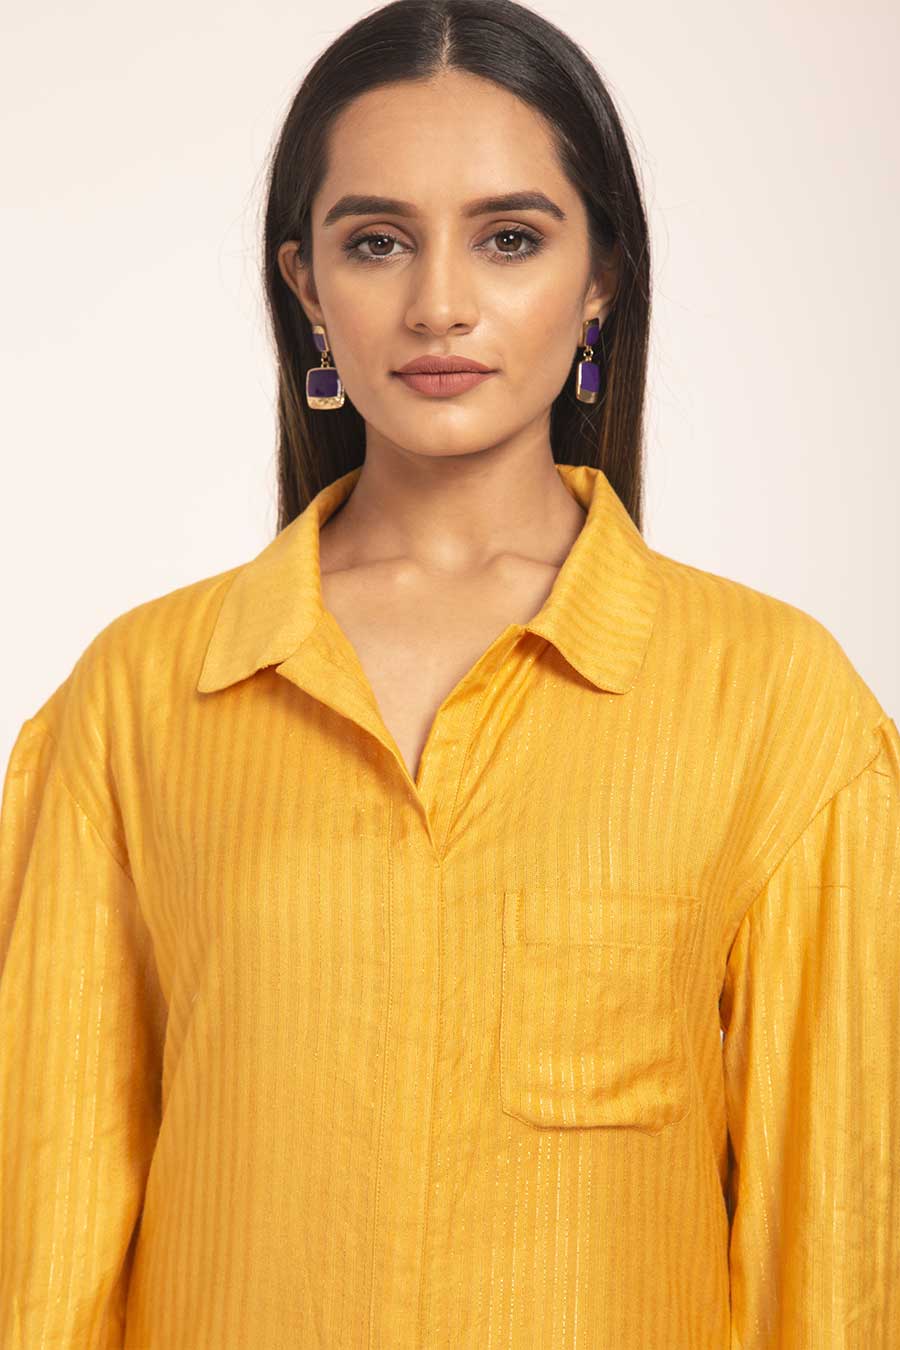 Zinnia - Yellow Cotton Silk Shirt Dress